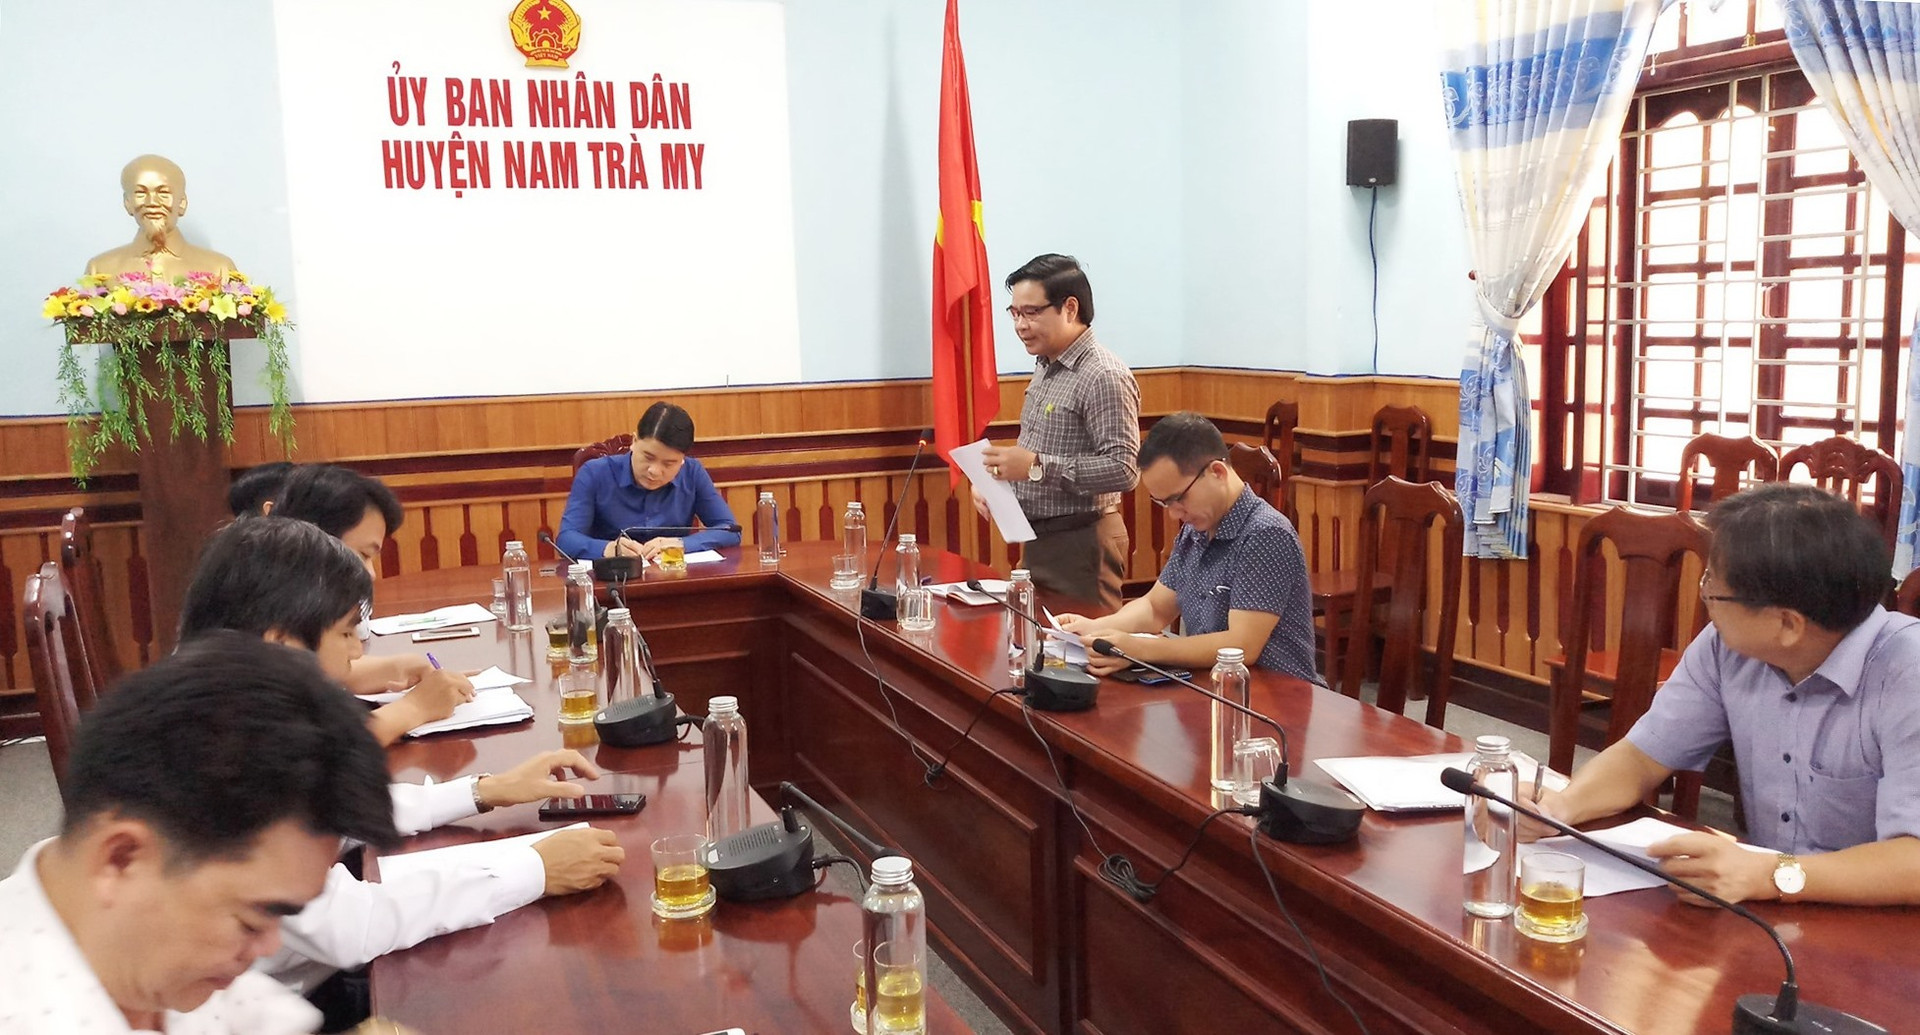 Phó Chủ tịch UBND tỉnh Trần Văn Tân làm việc với lãnh đạo huyện Nam Trà My về công tác phòng chống dịch Covid-19. Ảnh: A.N